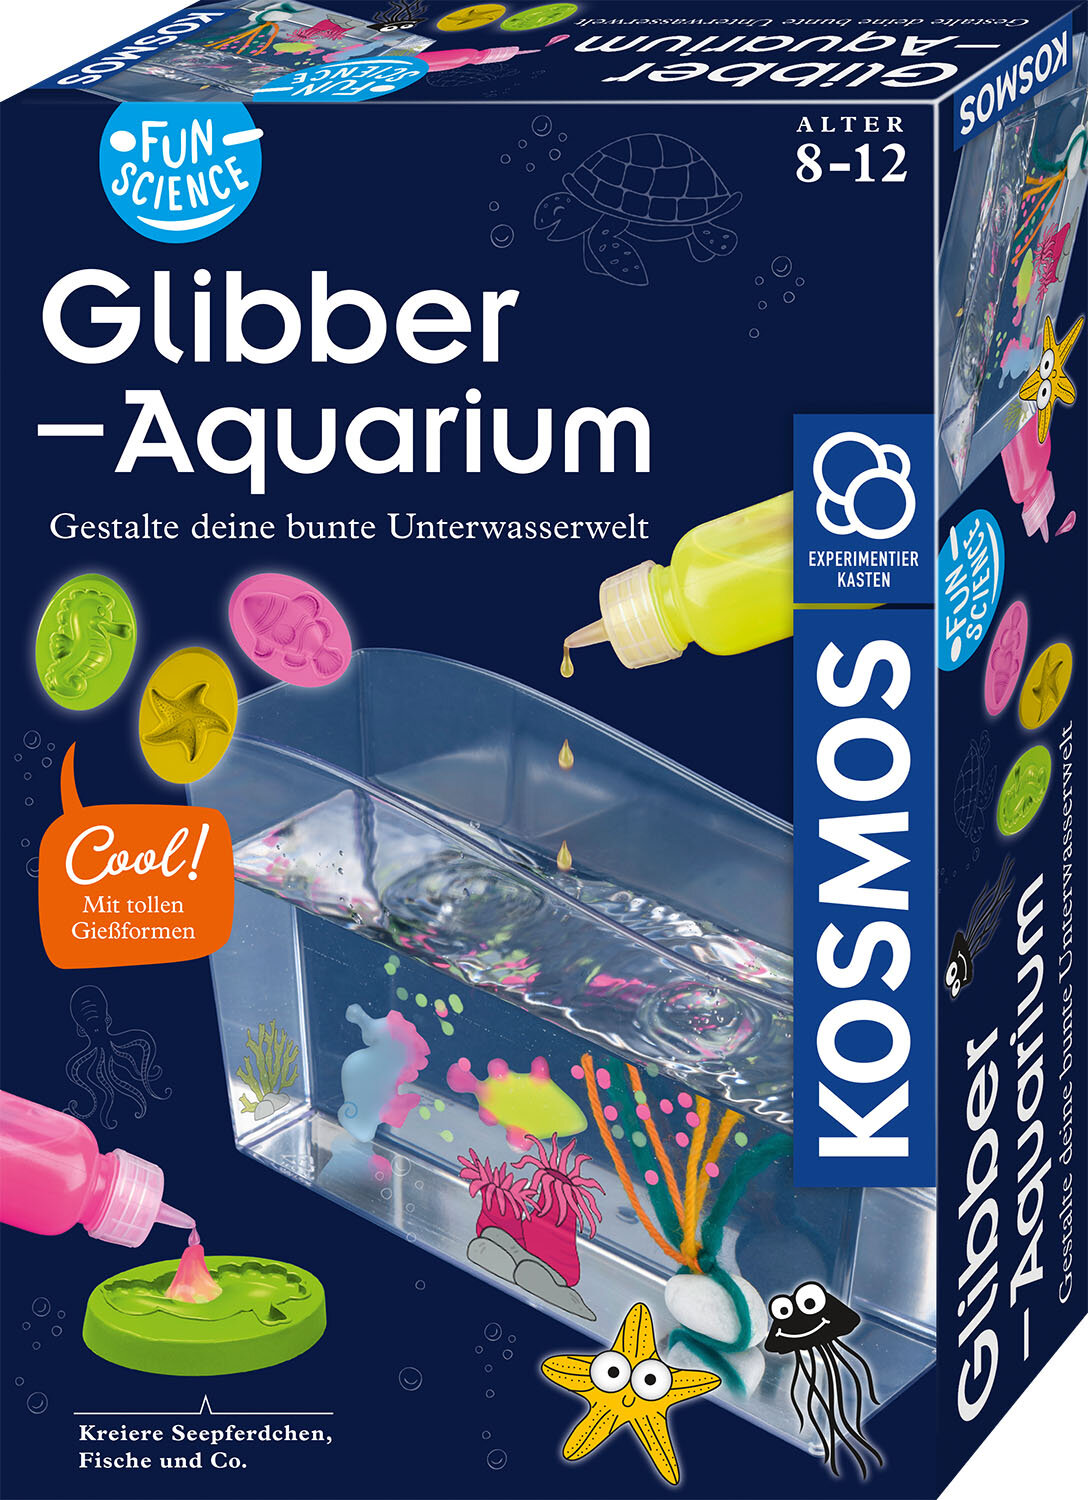 Fun Science - Glibber-Aquarium